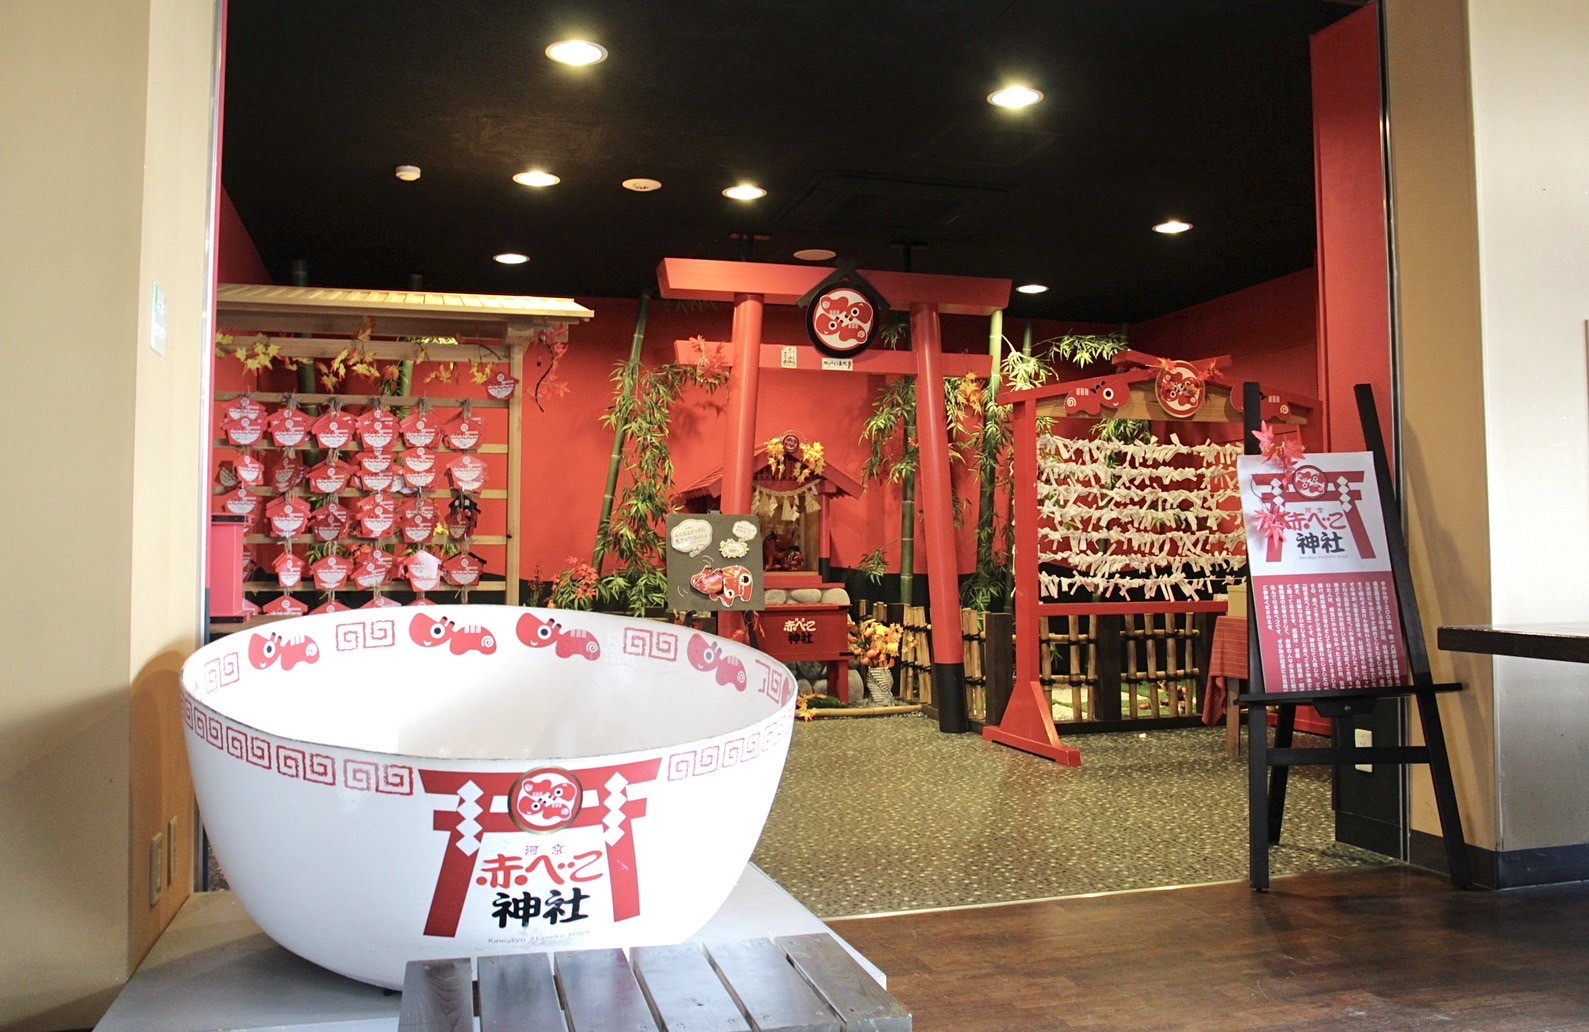 一樓還有福島鄉土吉祥物「紅牛」（赤べこ）的迷你神社，能進到巨型拉麵碗裡拍照。